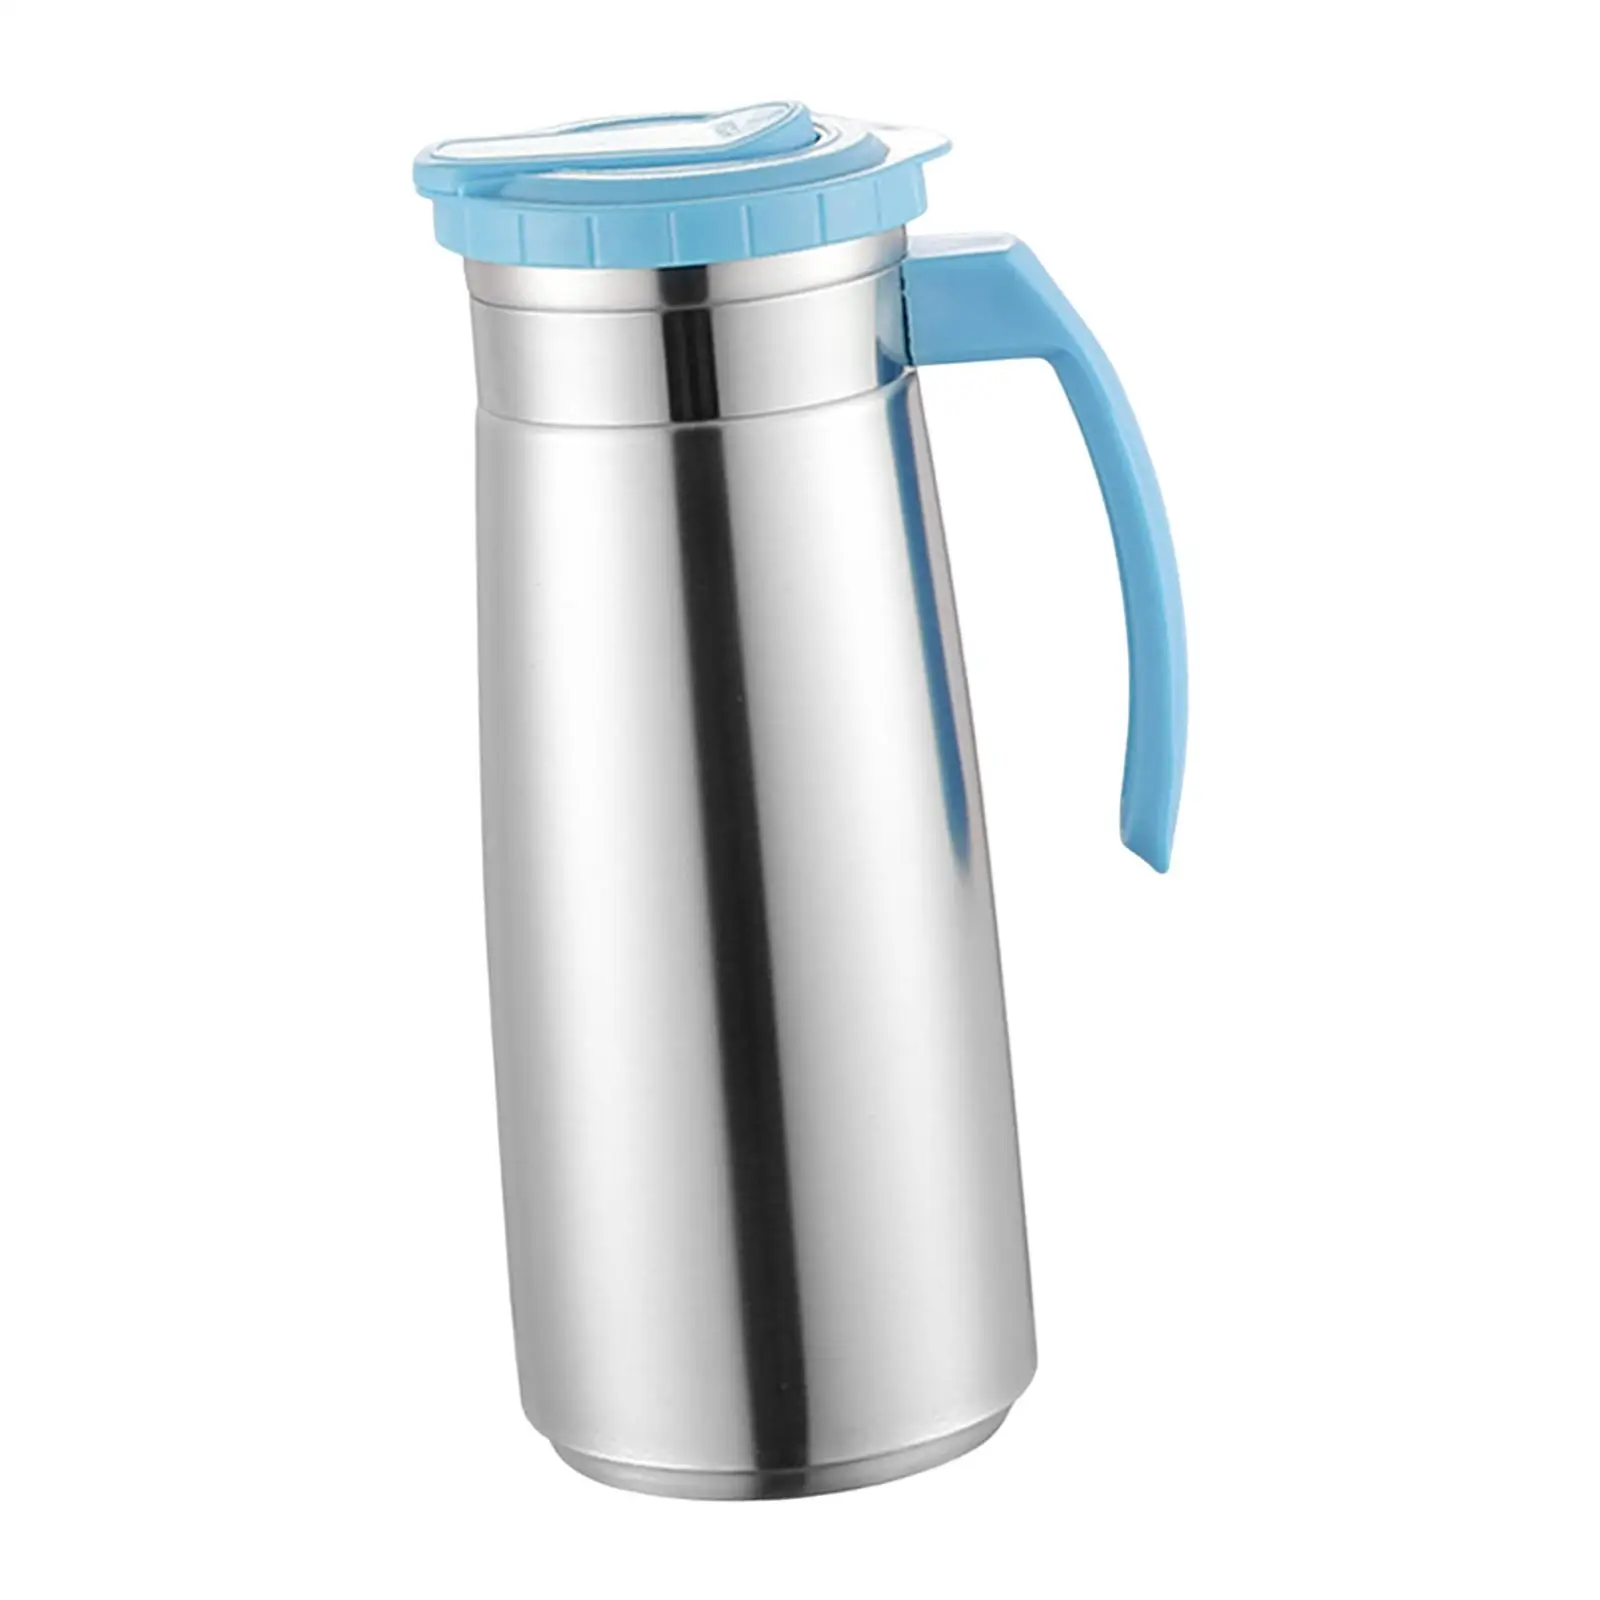 Stainless Steel Jug High Temperature Resistant Beverage Jar Water Jug Large Capacity Water Bottle for Tea Beverage Milk